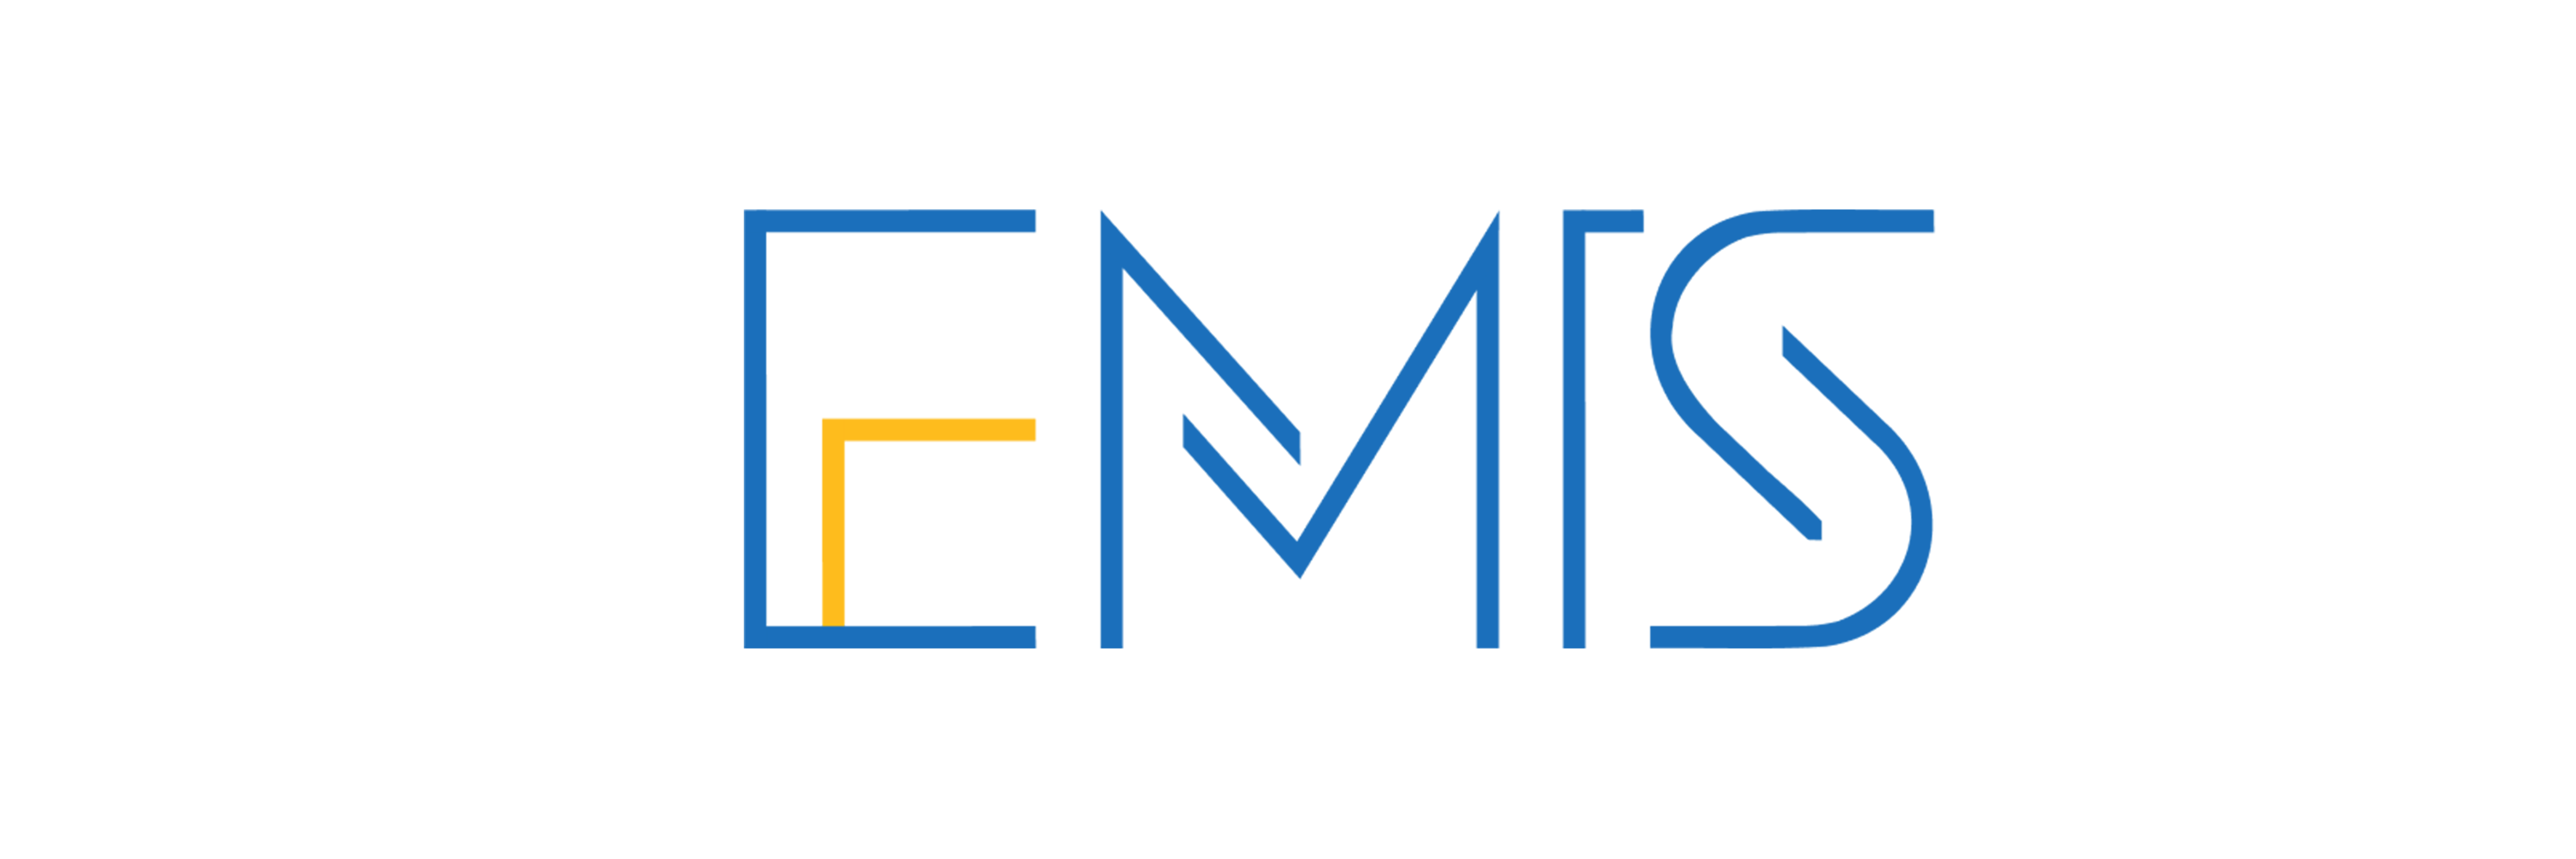 EMIS 4.0